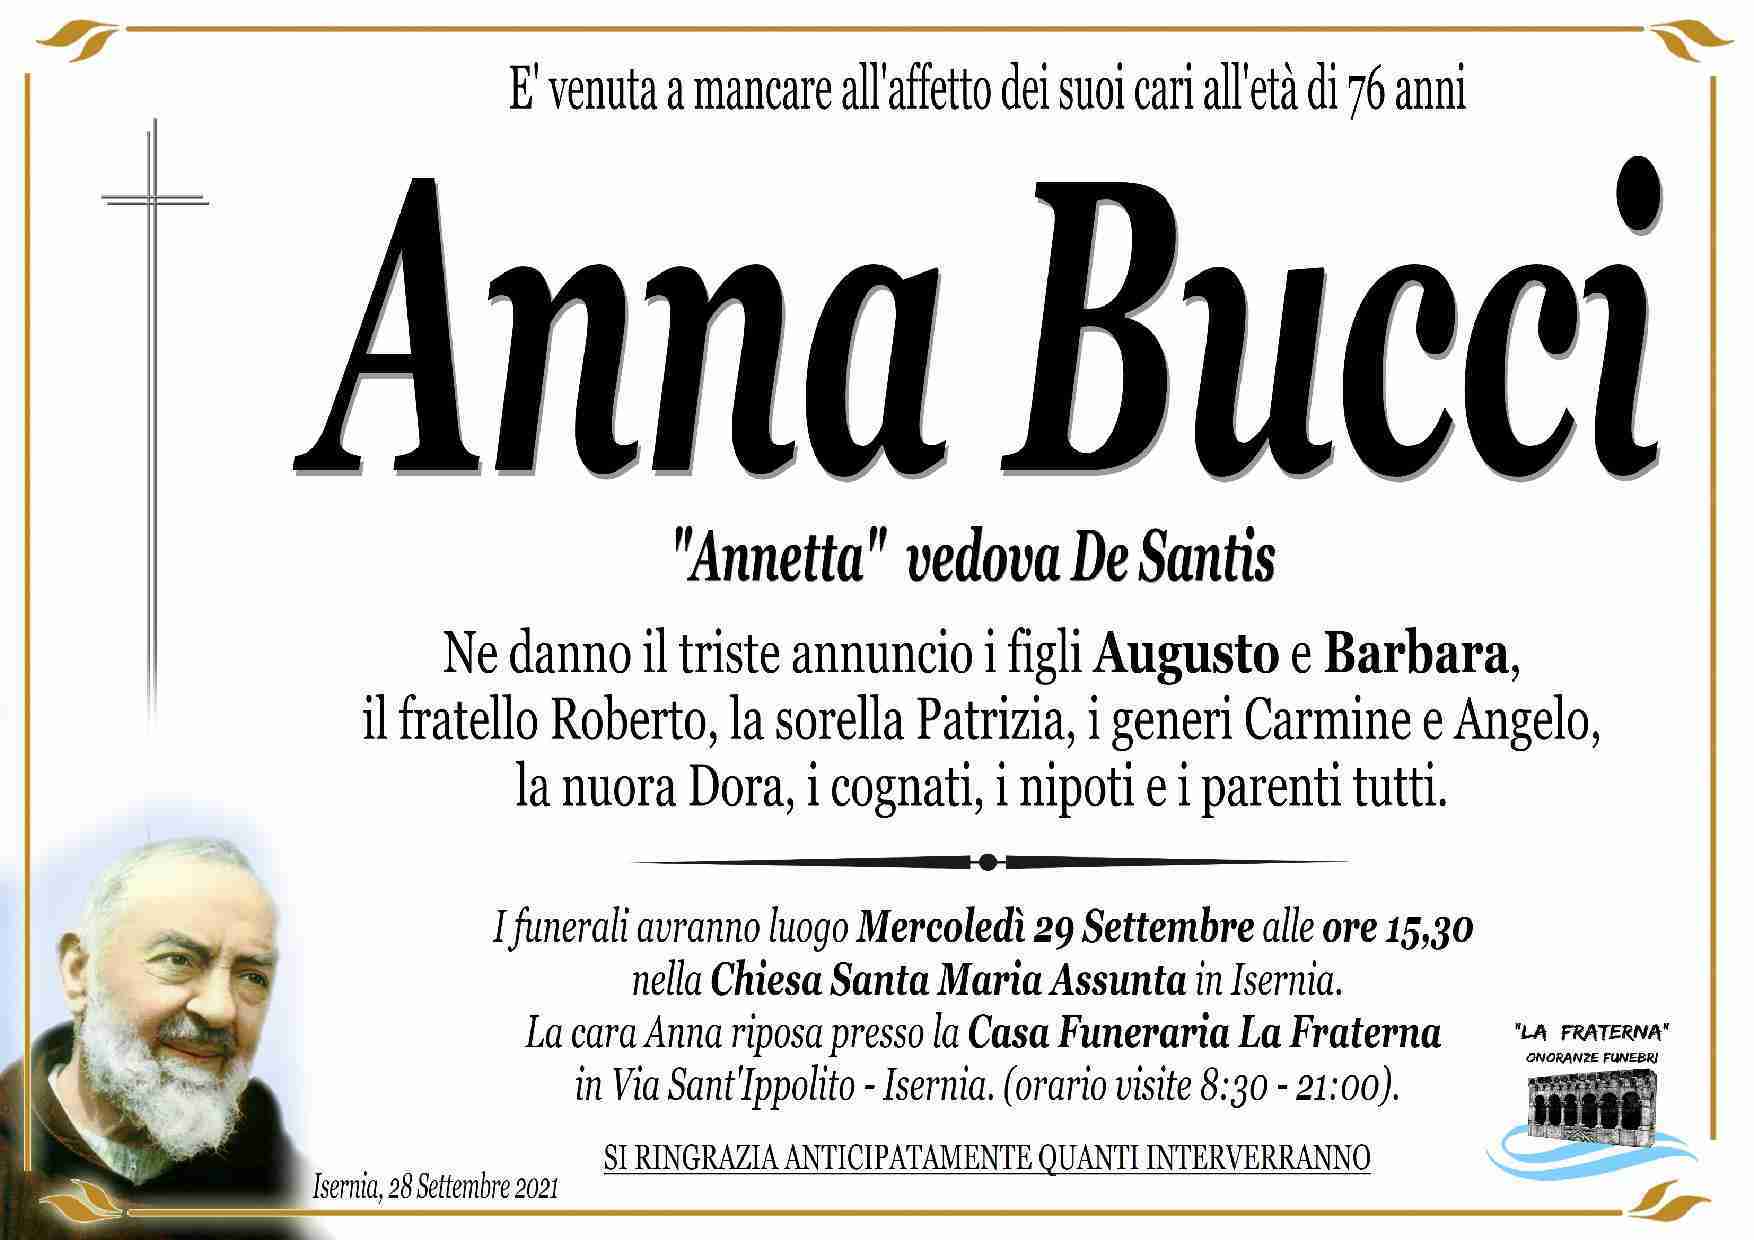 Anna Bucci